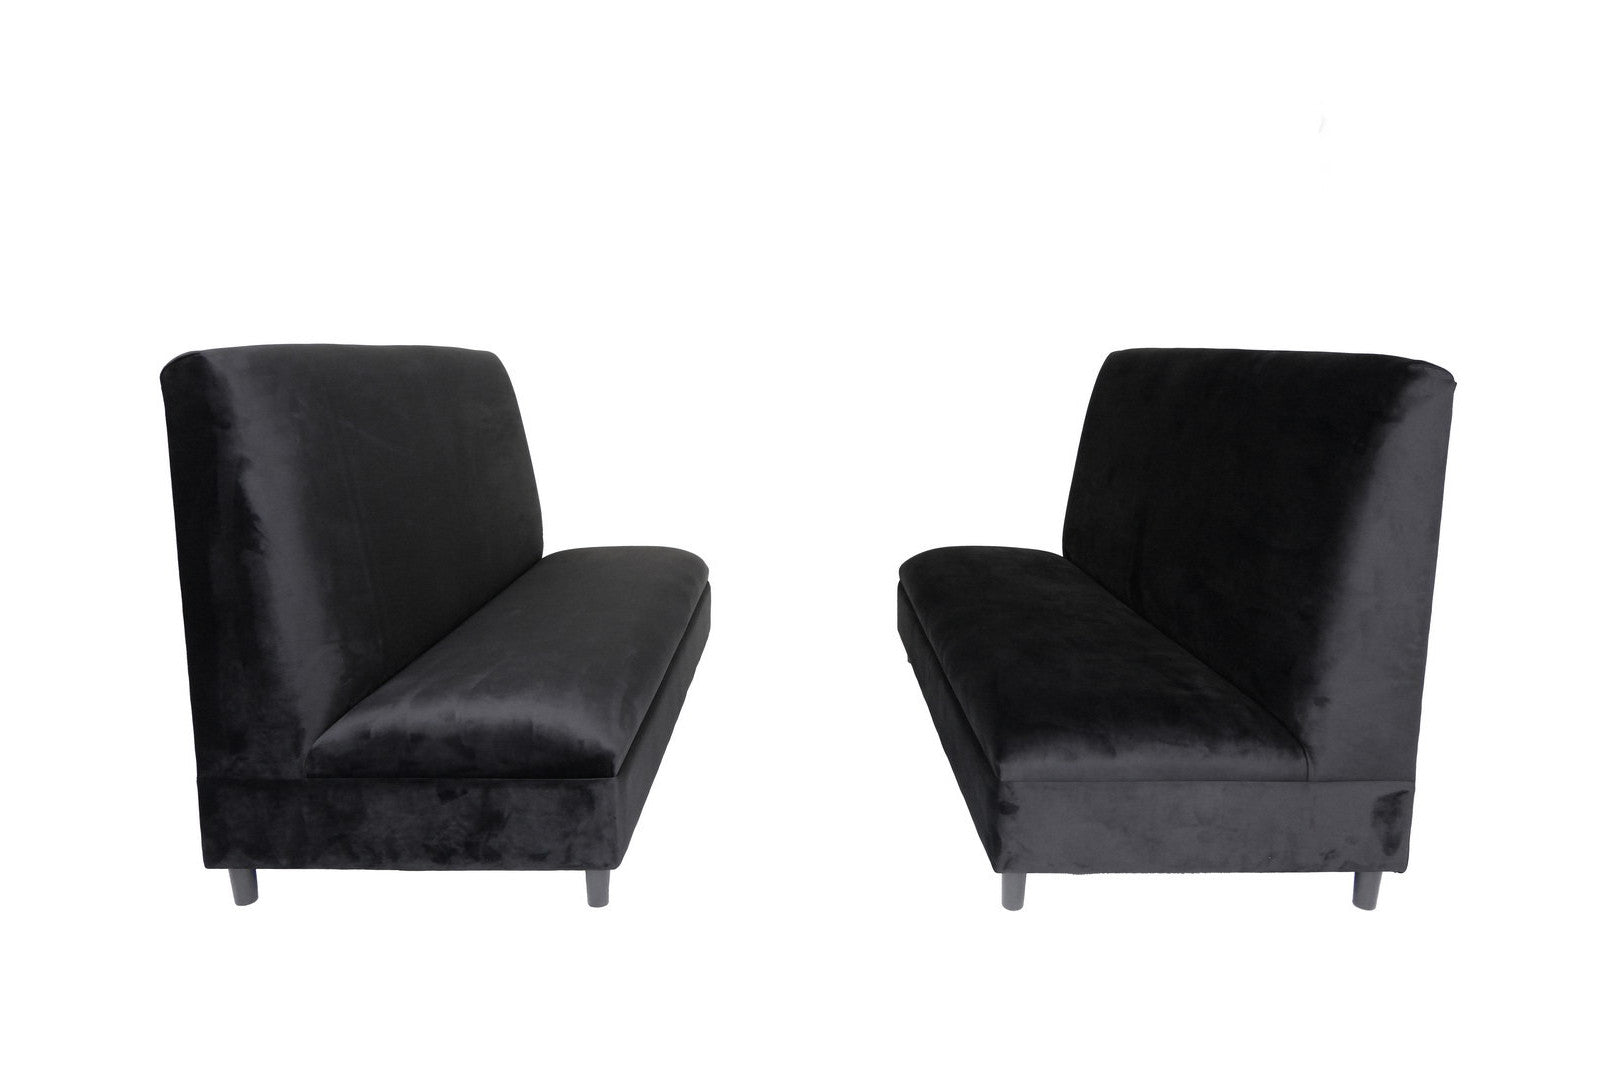 Two Piece Black Seating Set